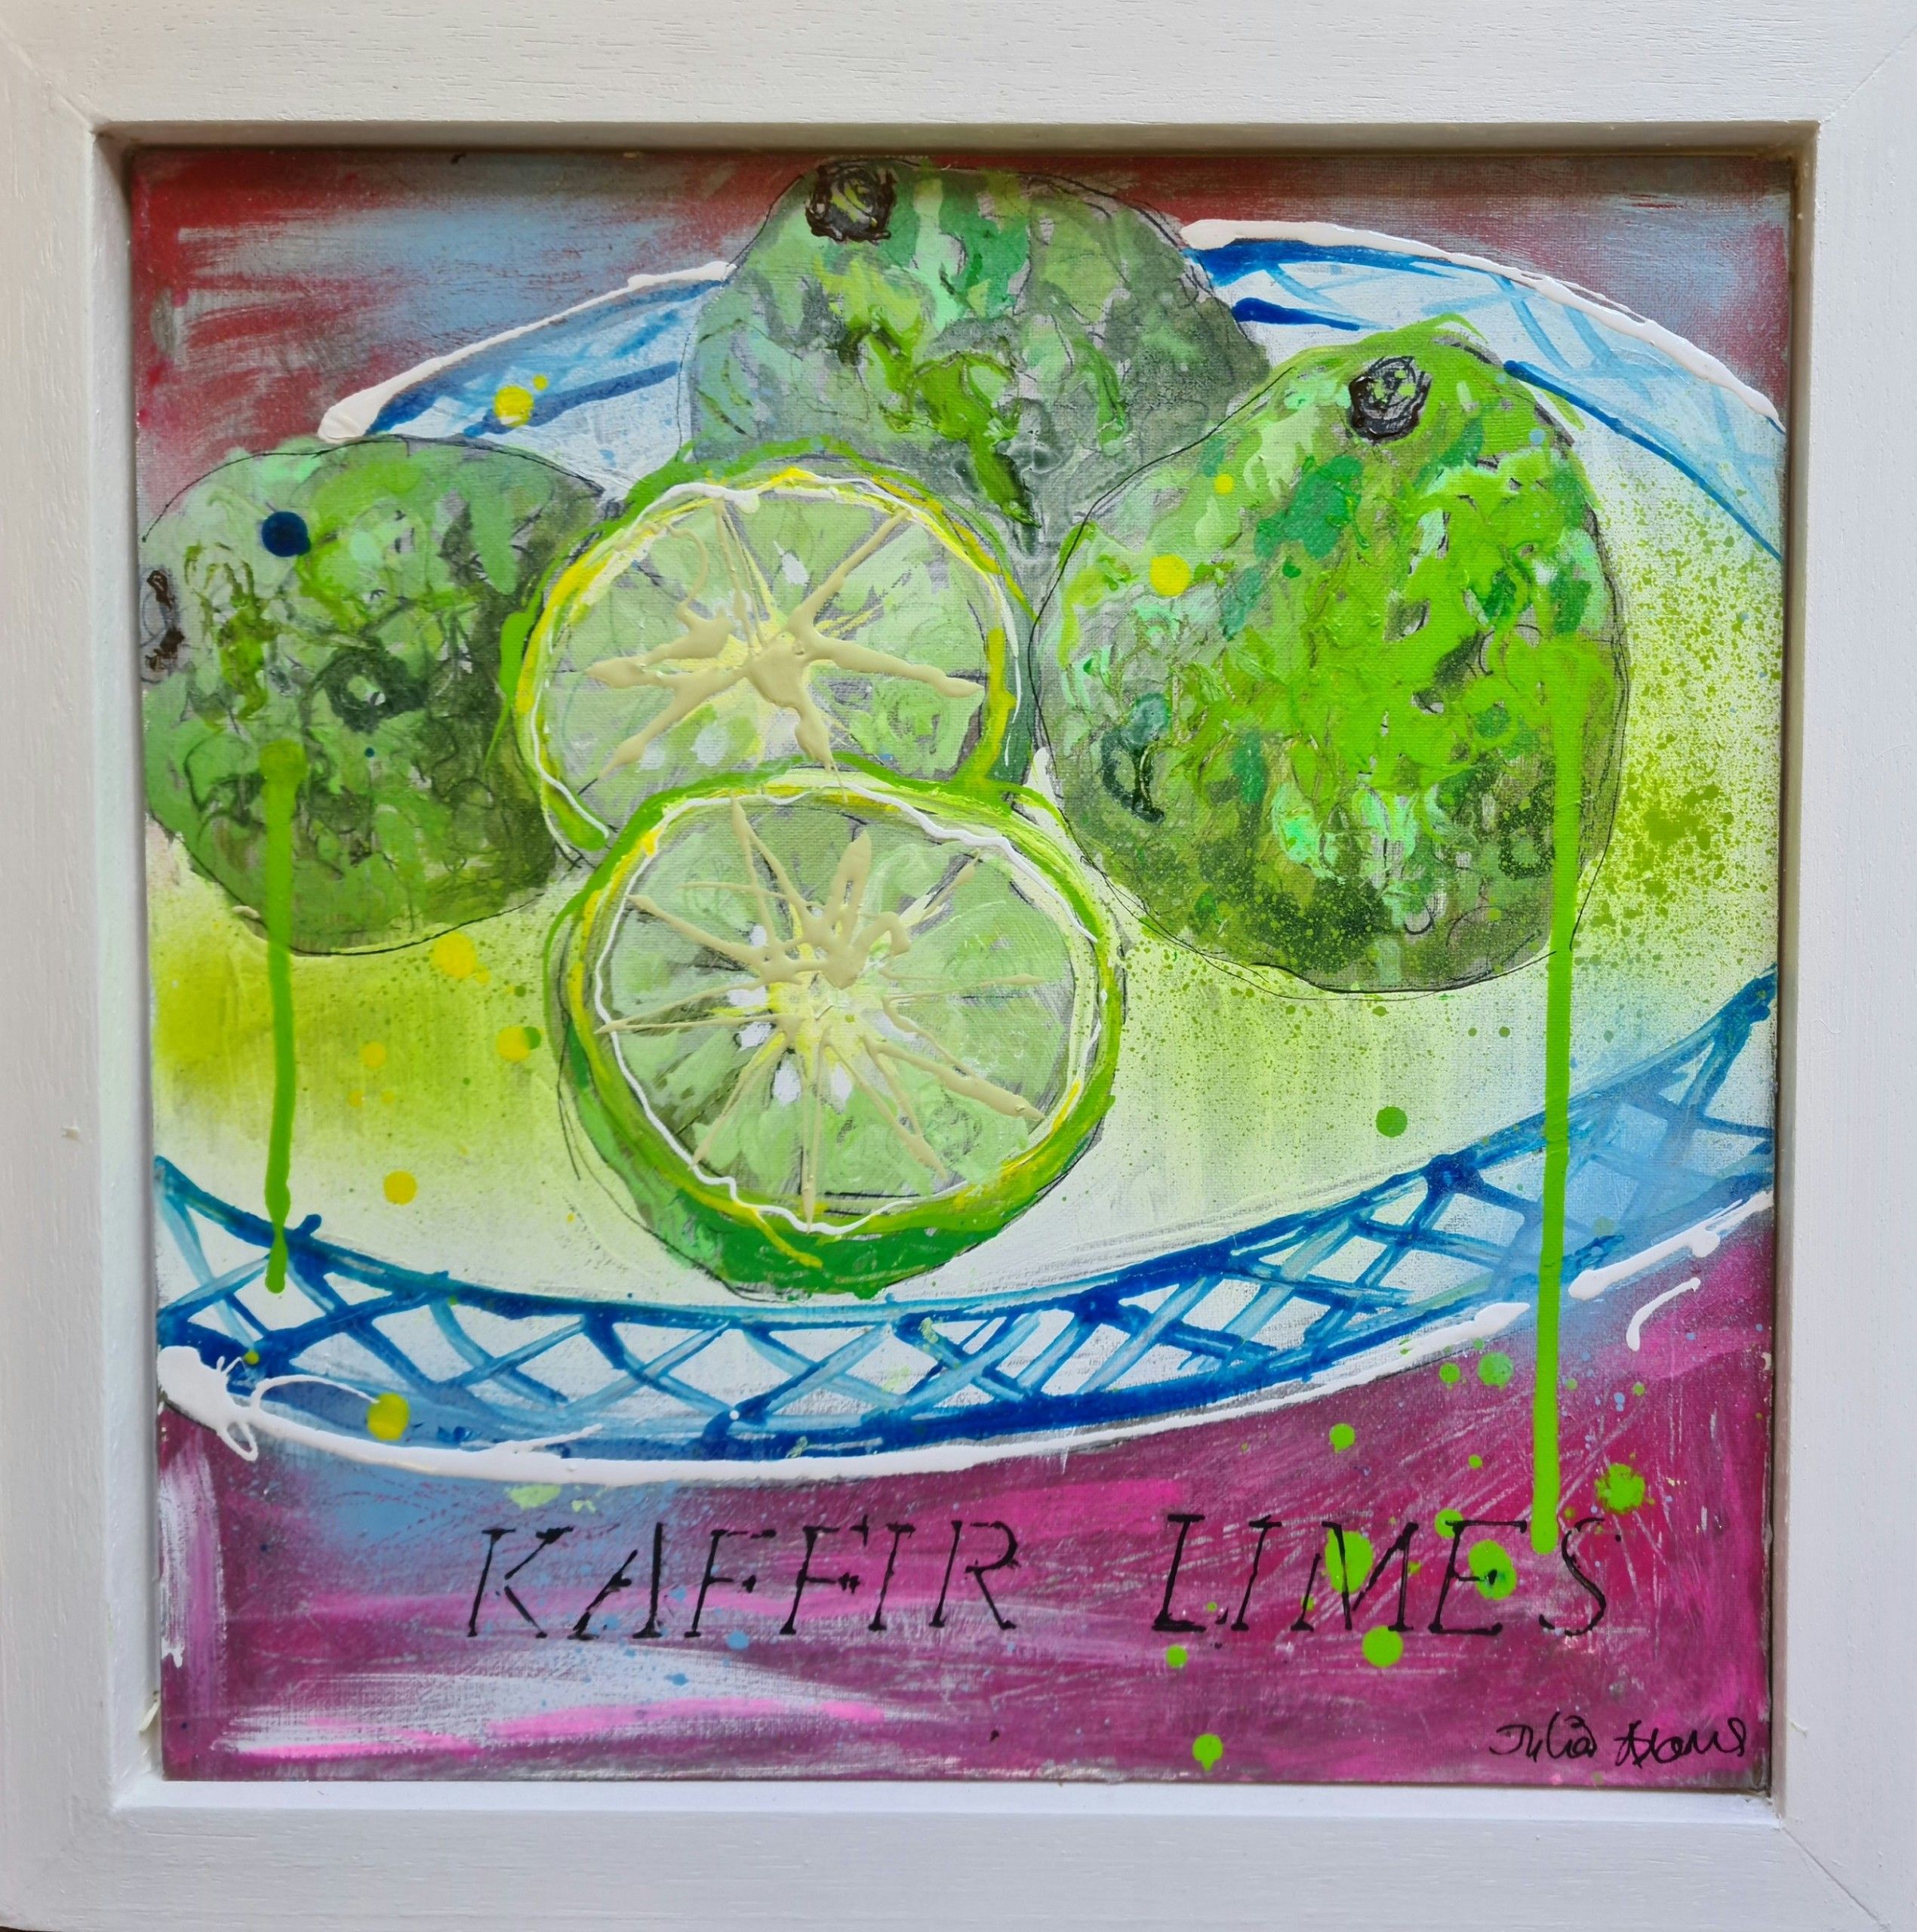 Kaffir Limes by Julia Adams